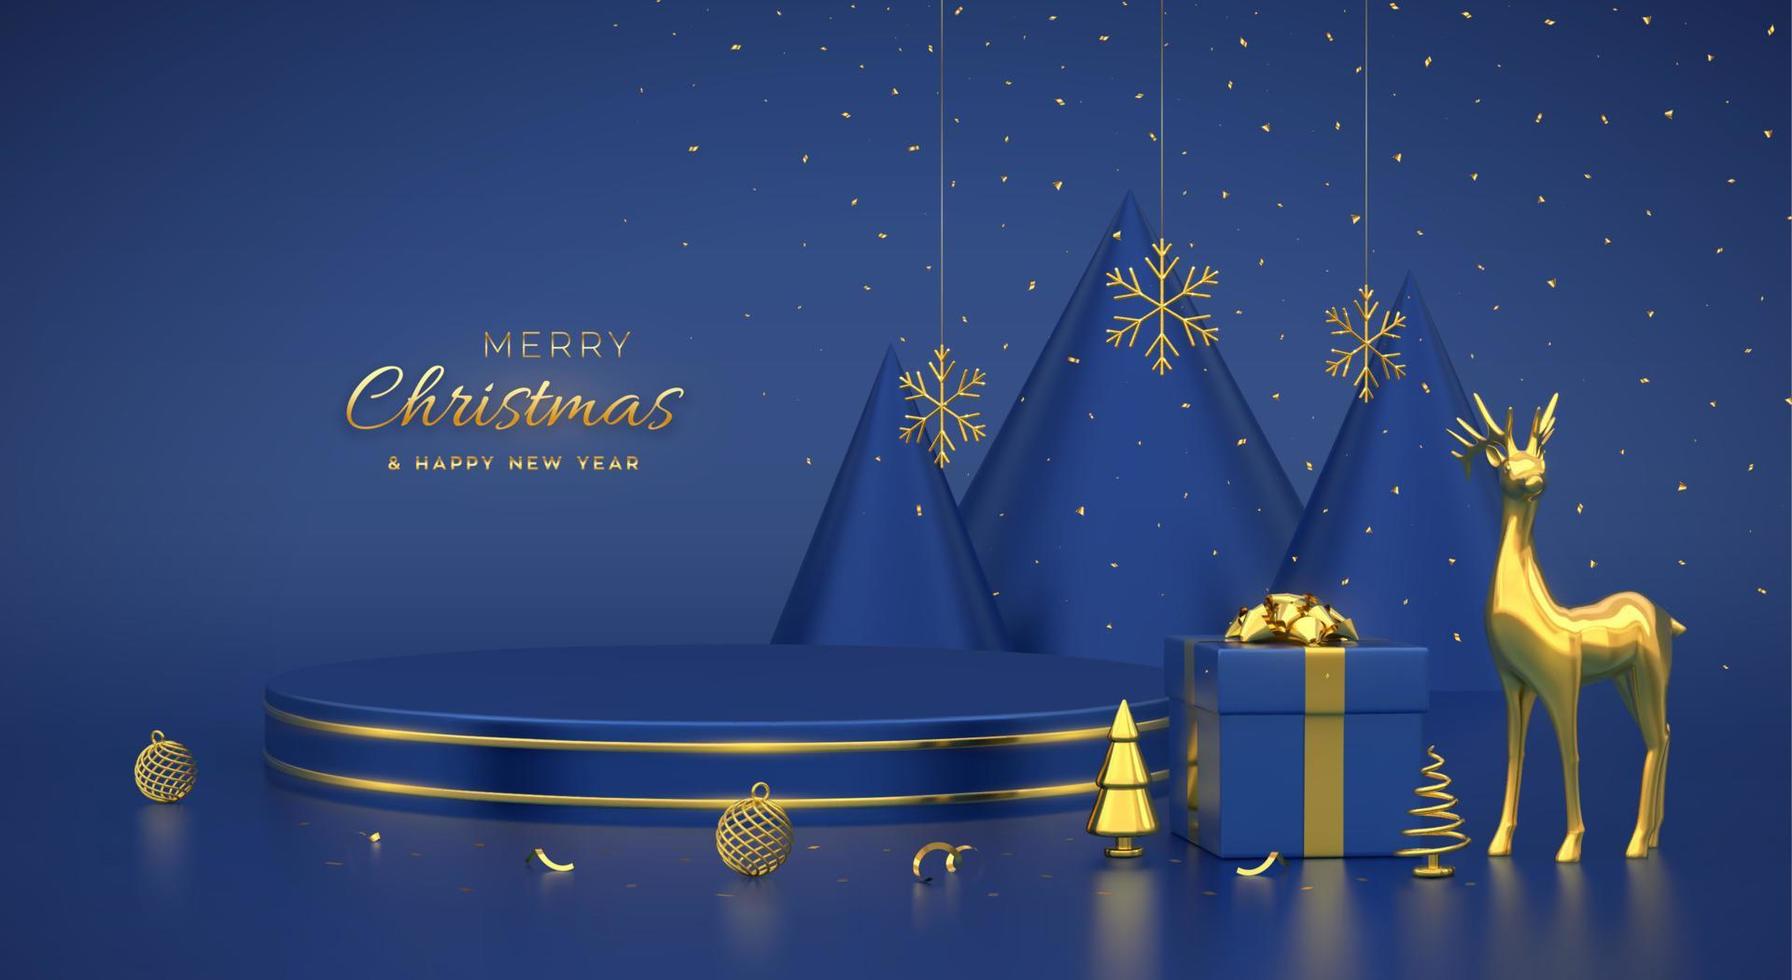 Escena navideña y plataforma redonda 3d con círculo dorado sobre fondo azul. pedestal en blanco con ciervos, copos de nieve, bolas, cajas de regalo, pino de forma de cono metálico dorado, abetos. ilustración vectorial. vector